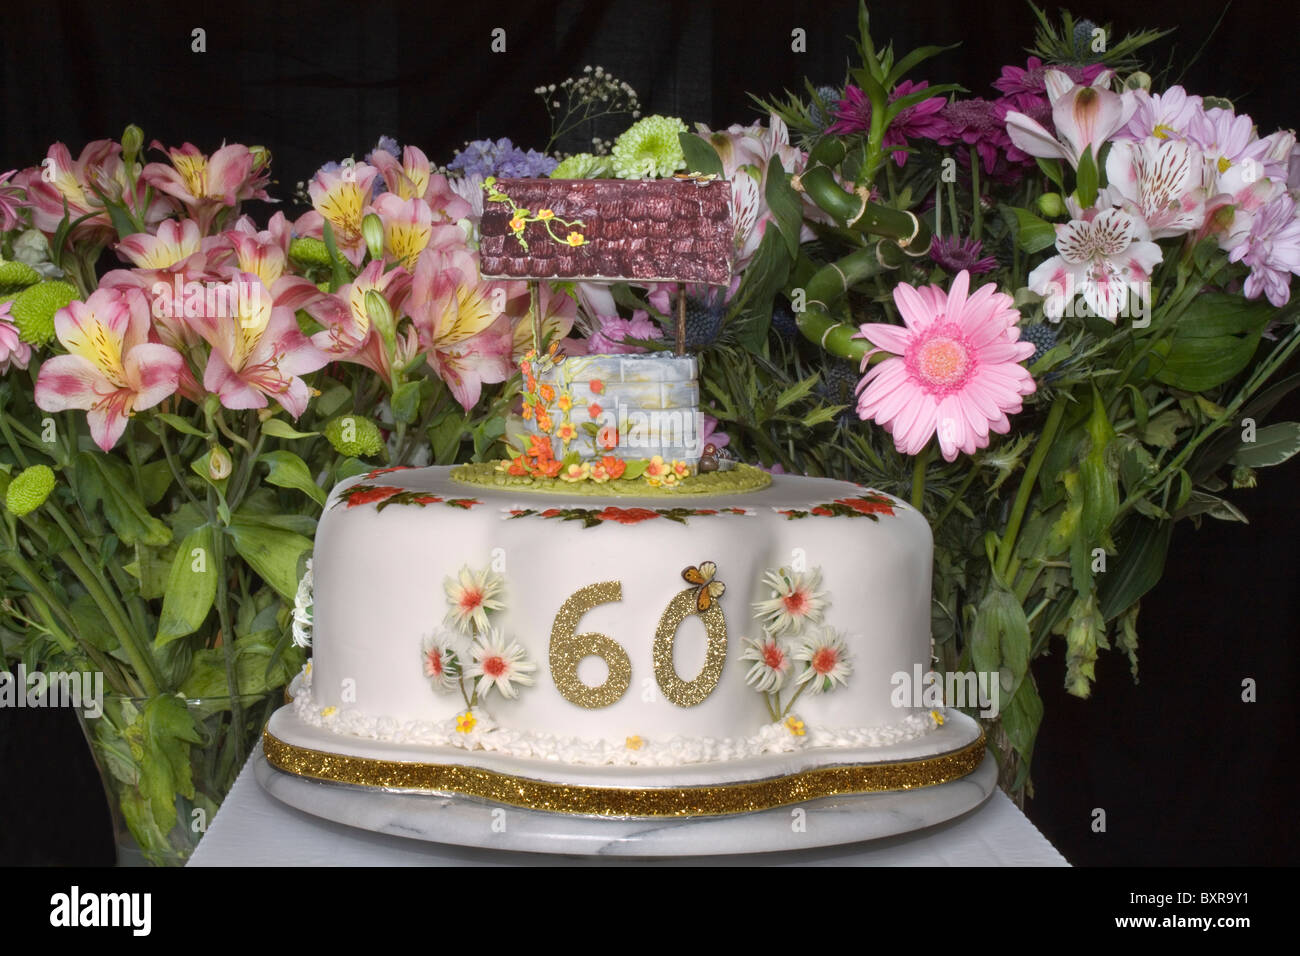 Un sessantesimo compleanno torta con Wishing Well sulla parte superiore e i fiori recisi in background Foto Stock